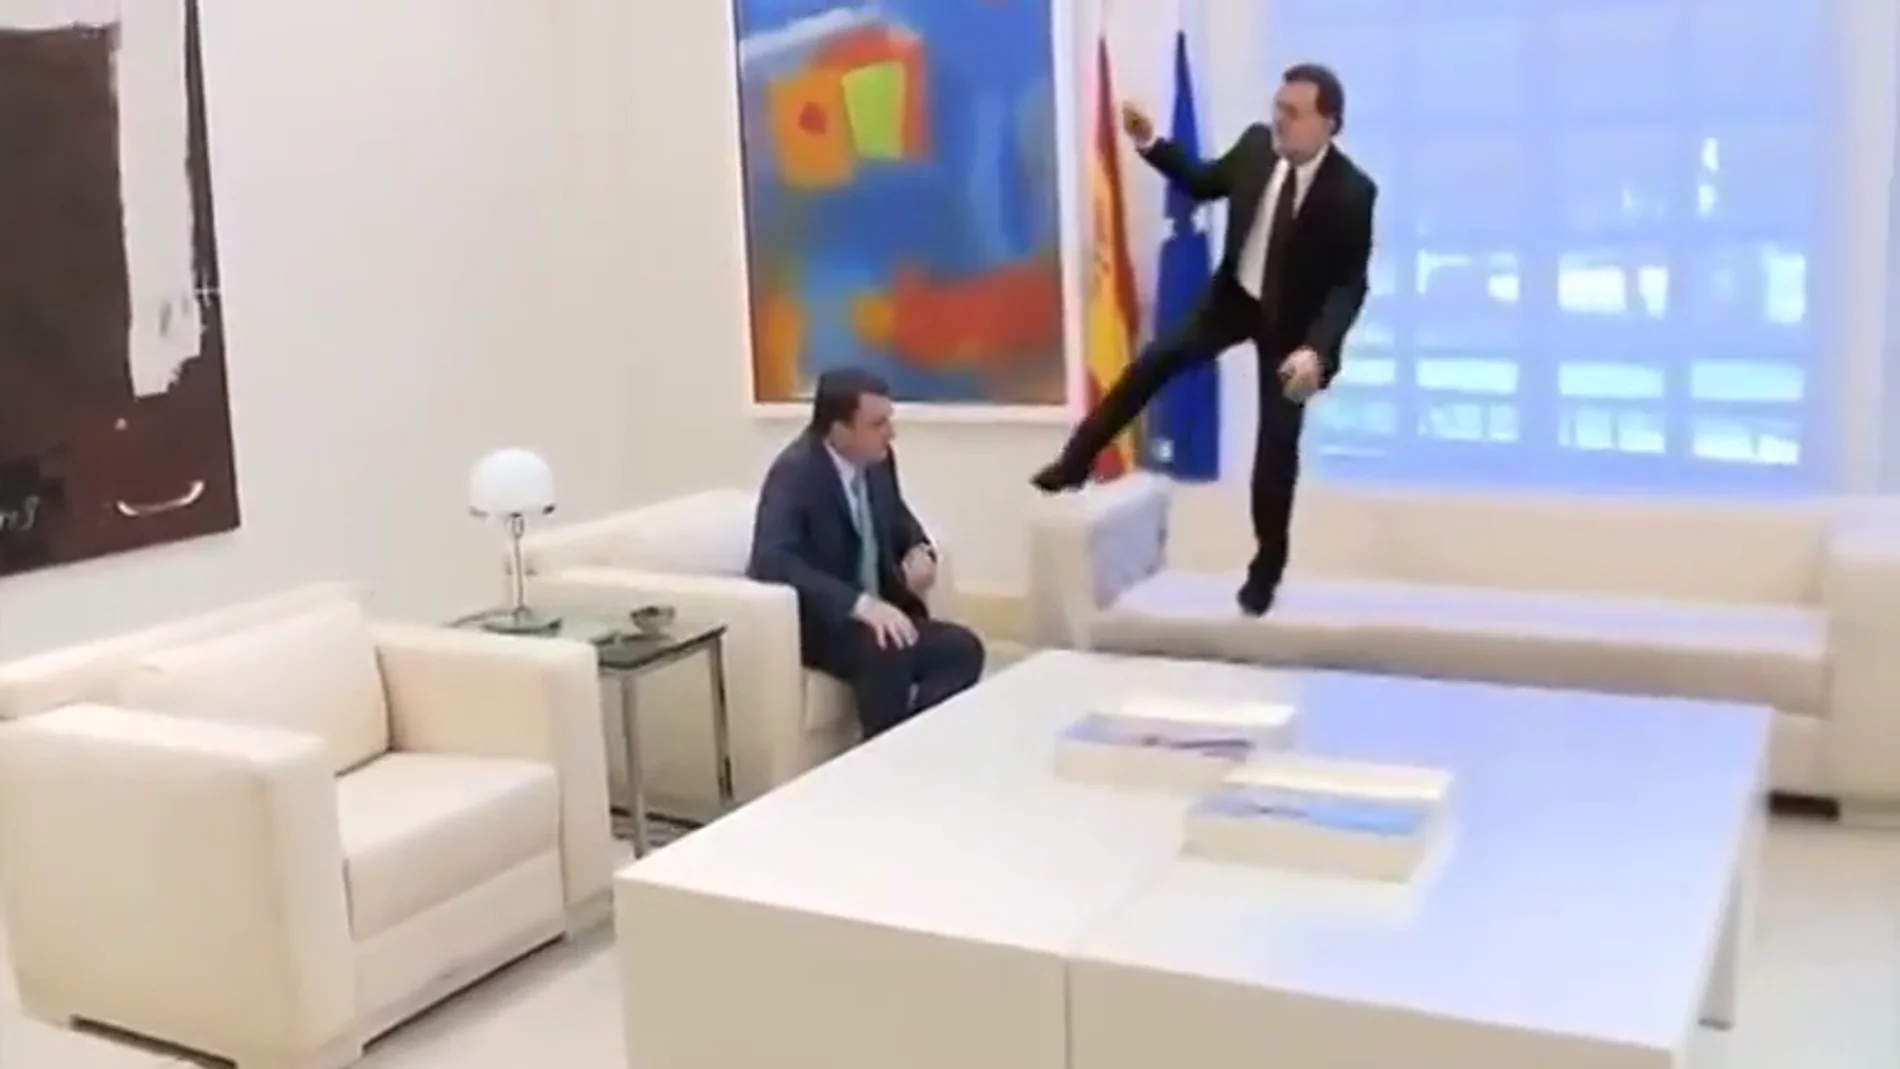 #VídeoManipulado | El Aurresku de Mariano Rajoy a Aitor Esteban en La Moncloa